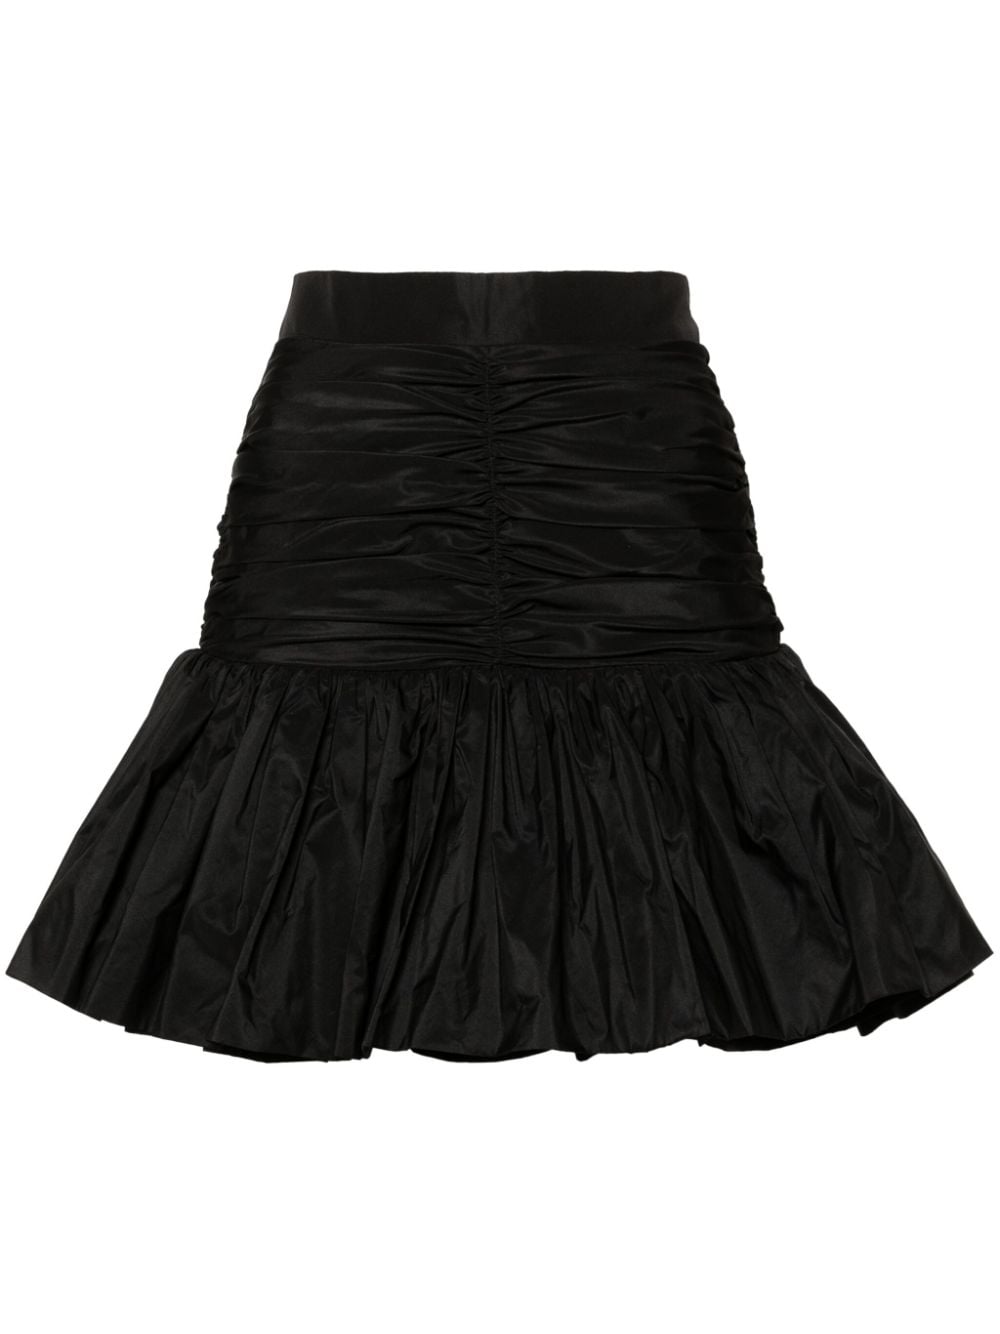 Skirt with flounces